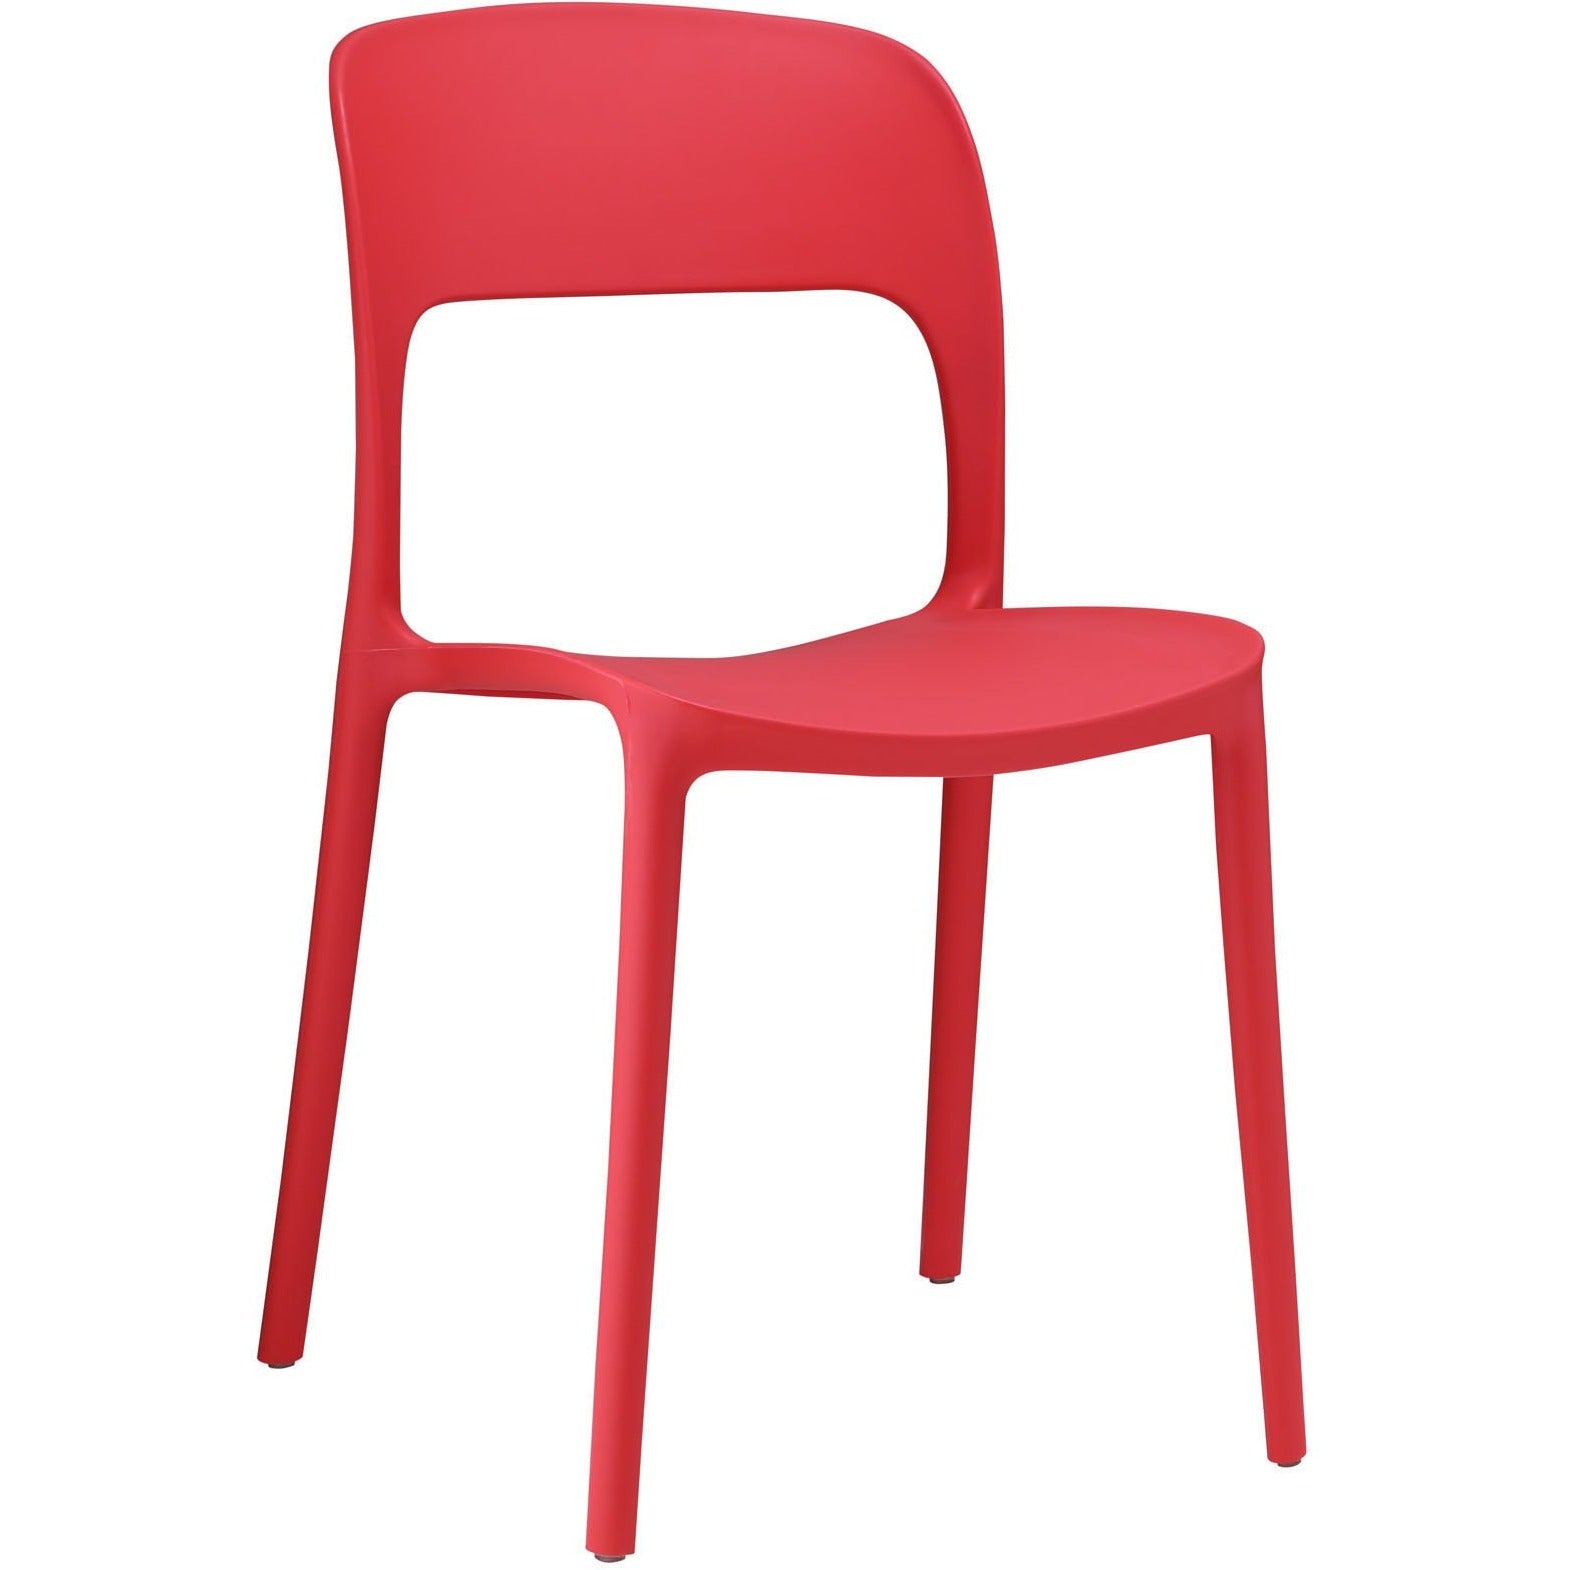 Modway Furniture Hop Modern Dining Chair EEI-1461-Minimal & Modern